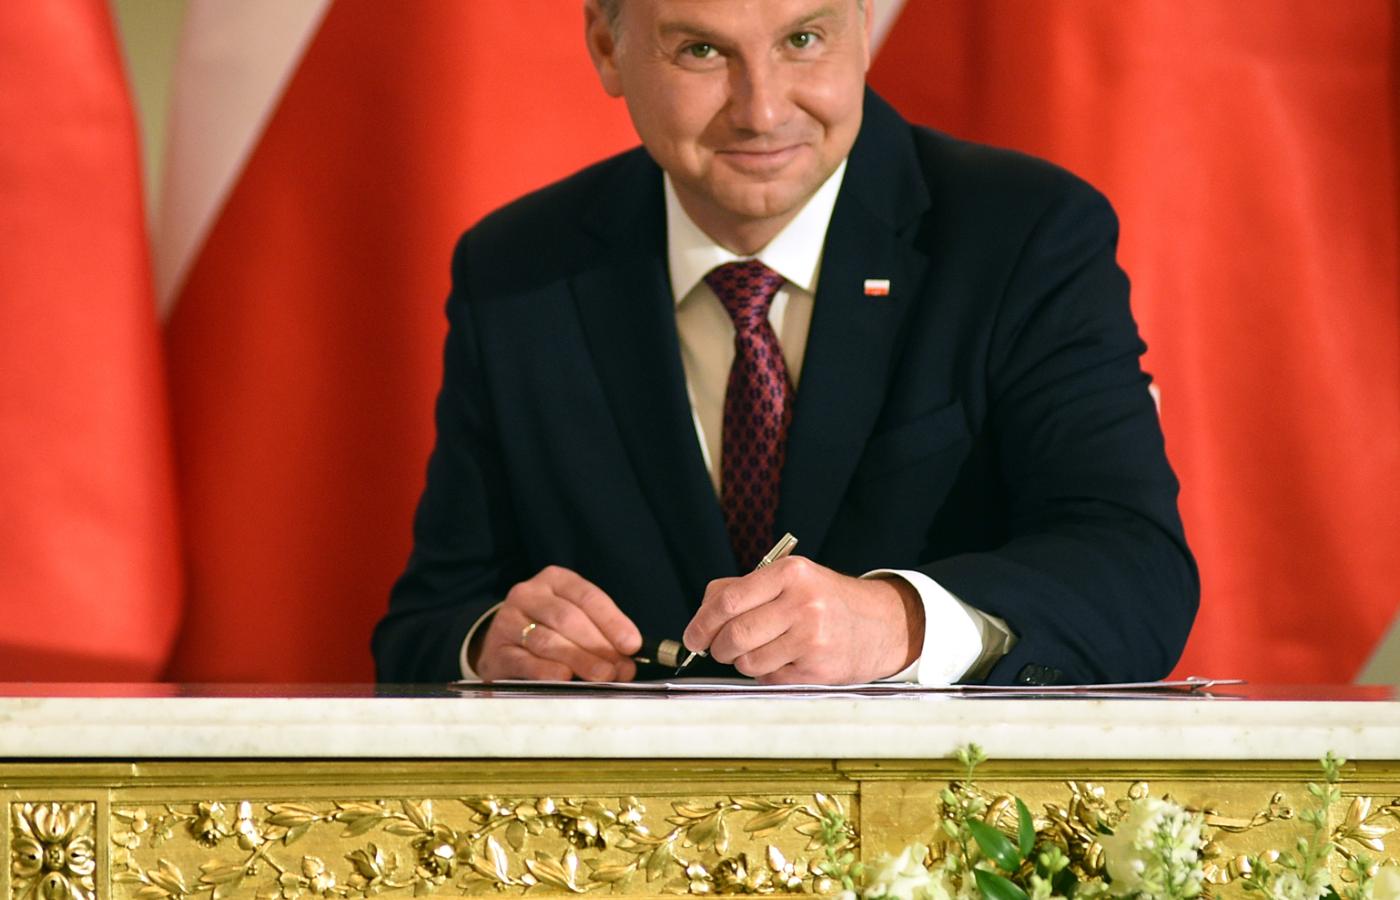 Pomiatanie Andrzejem Dudą prowadzi do deprecjonowania urzędu prezydenta.